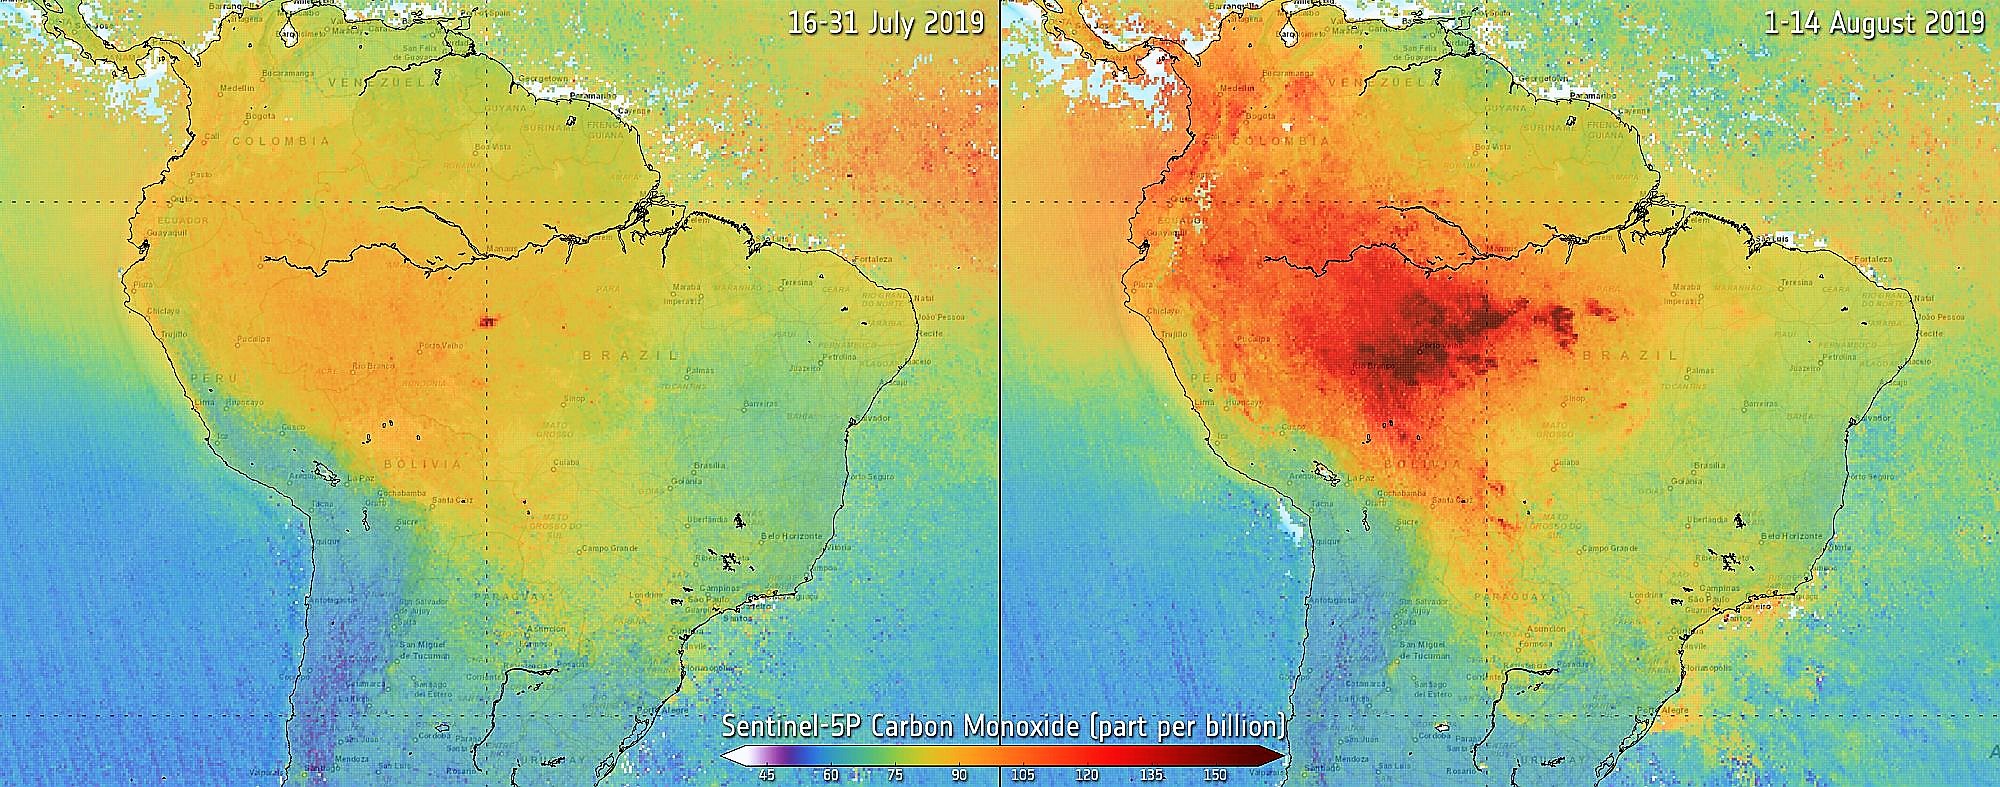 Kohlenmonoxid aus Bränden am Amazonas